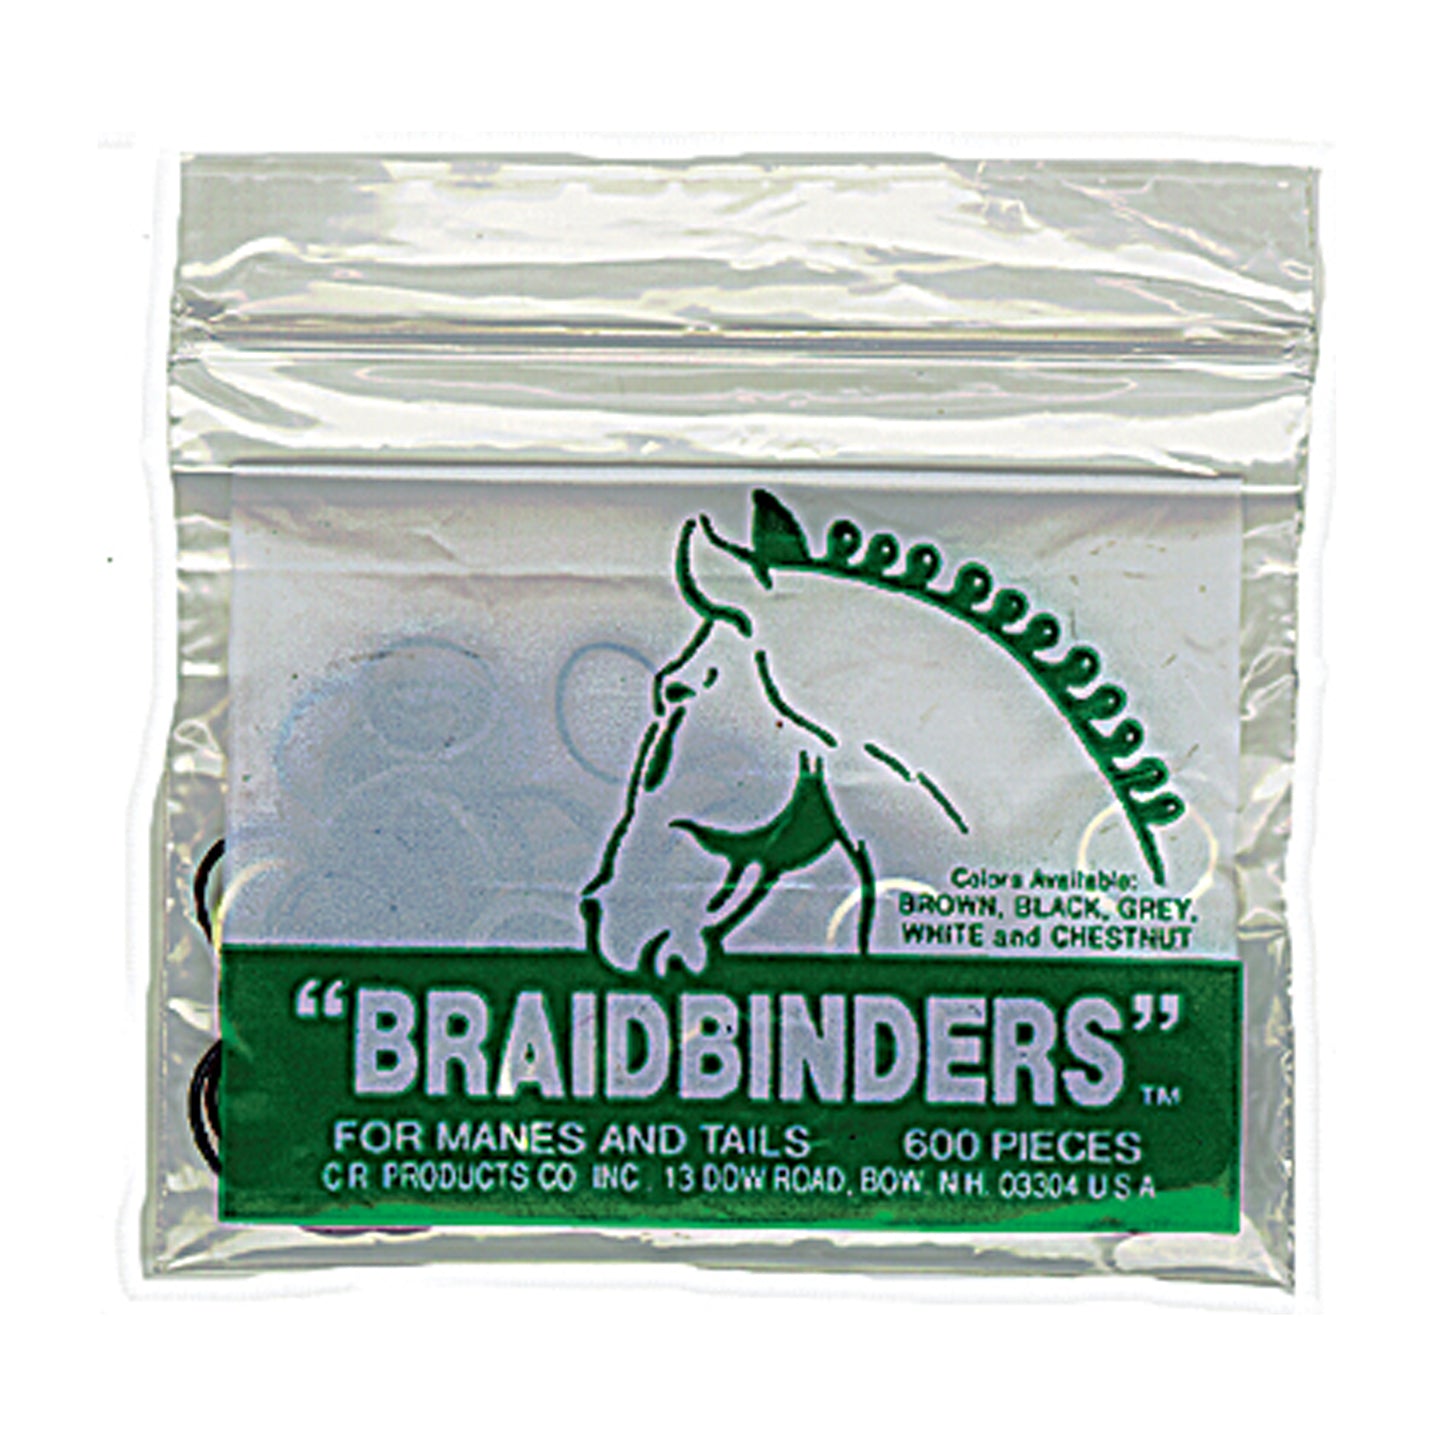 Braid Binders